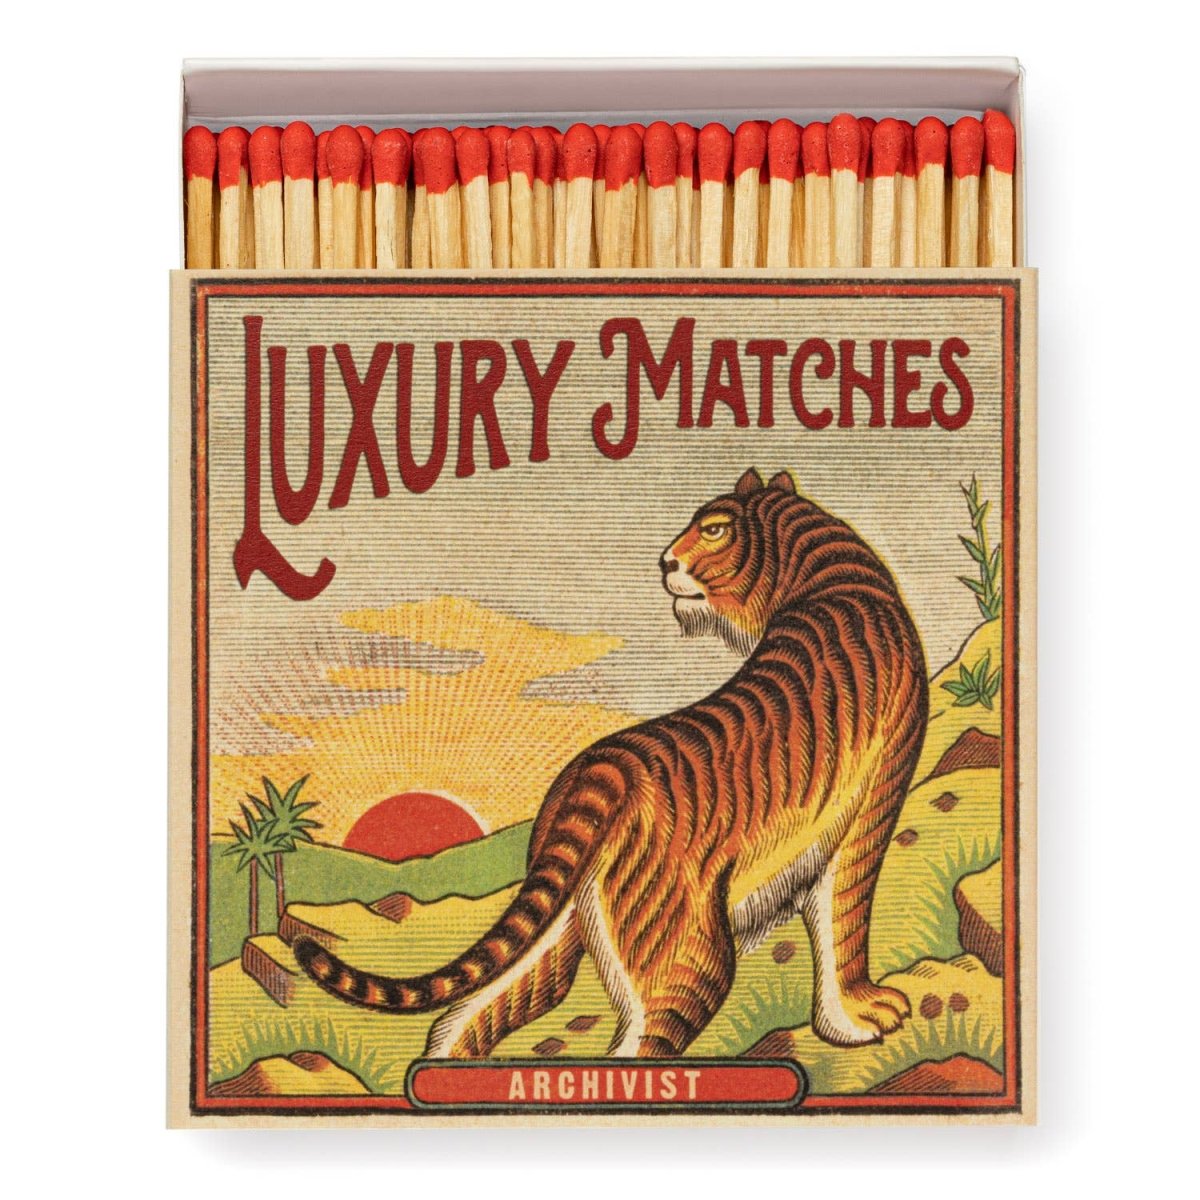 New Tiger Matchbox